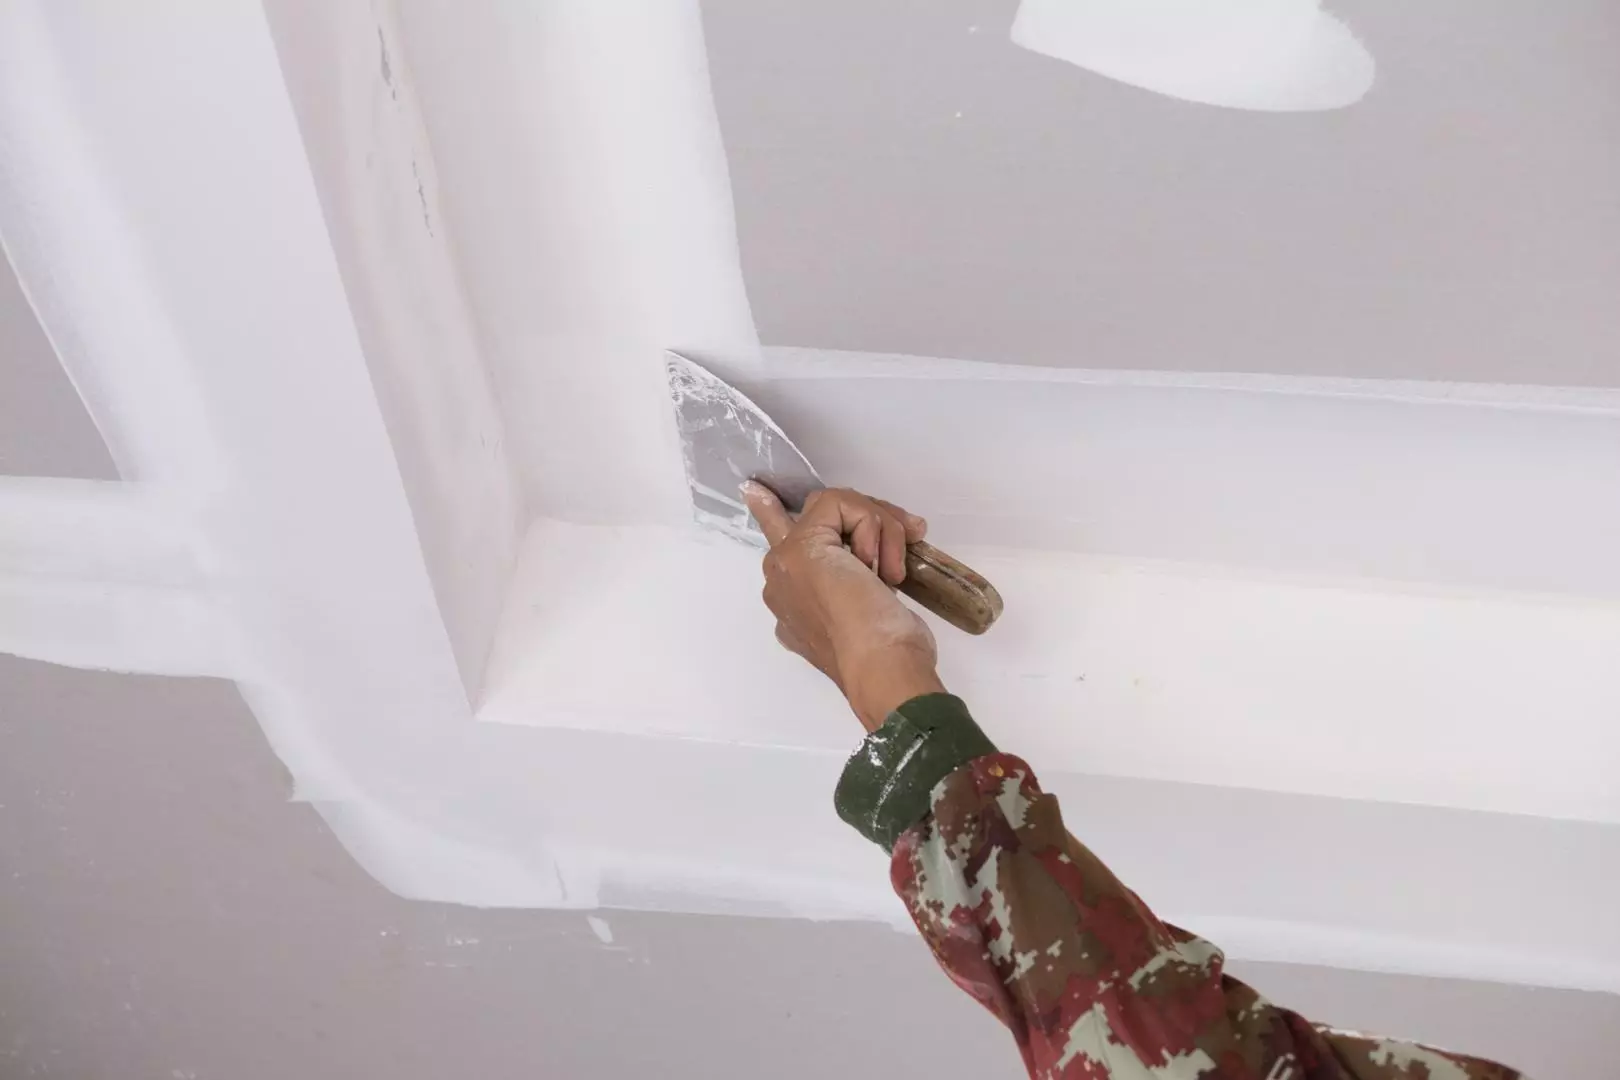 ເພດານໃນຫ້ອງ Drywall ຫ້ອງນ້ໍາ (38 ຮູບພາບ): ມັນເປັນໄປໄດ້ທີ່ຈະເຮັດເພດານທີ່ລະງັບການ plasterboard ຢູ່ໃນຫ້ອງນ້ໍາບໍ? ຂໍ້ດີແລະຂໍ້ເສຍປຽບຂອງການນໍາໃຊ້ 21417_17